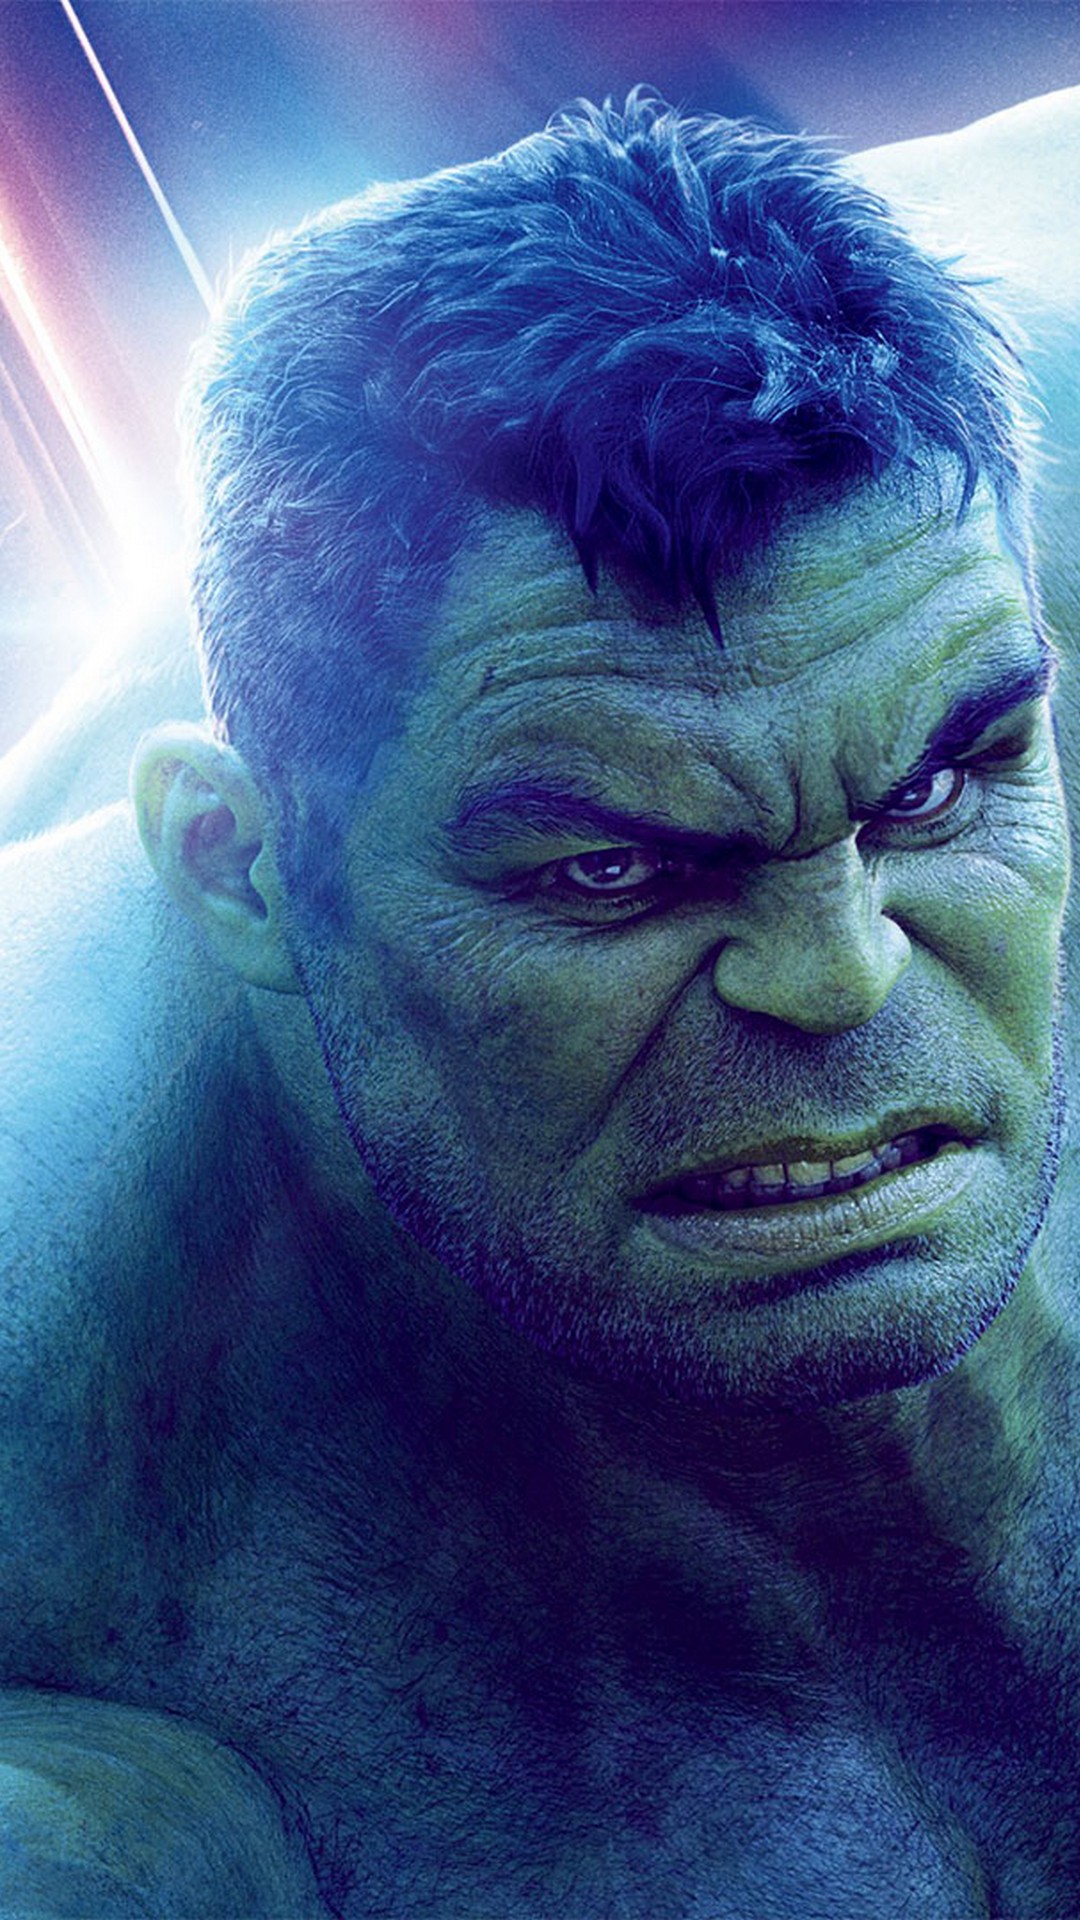 Hulk Avengers Endgame iPhone Wallpaper Movie Poster